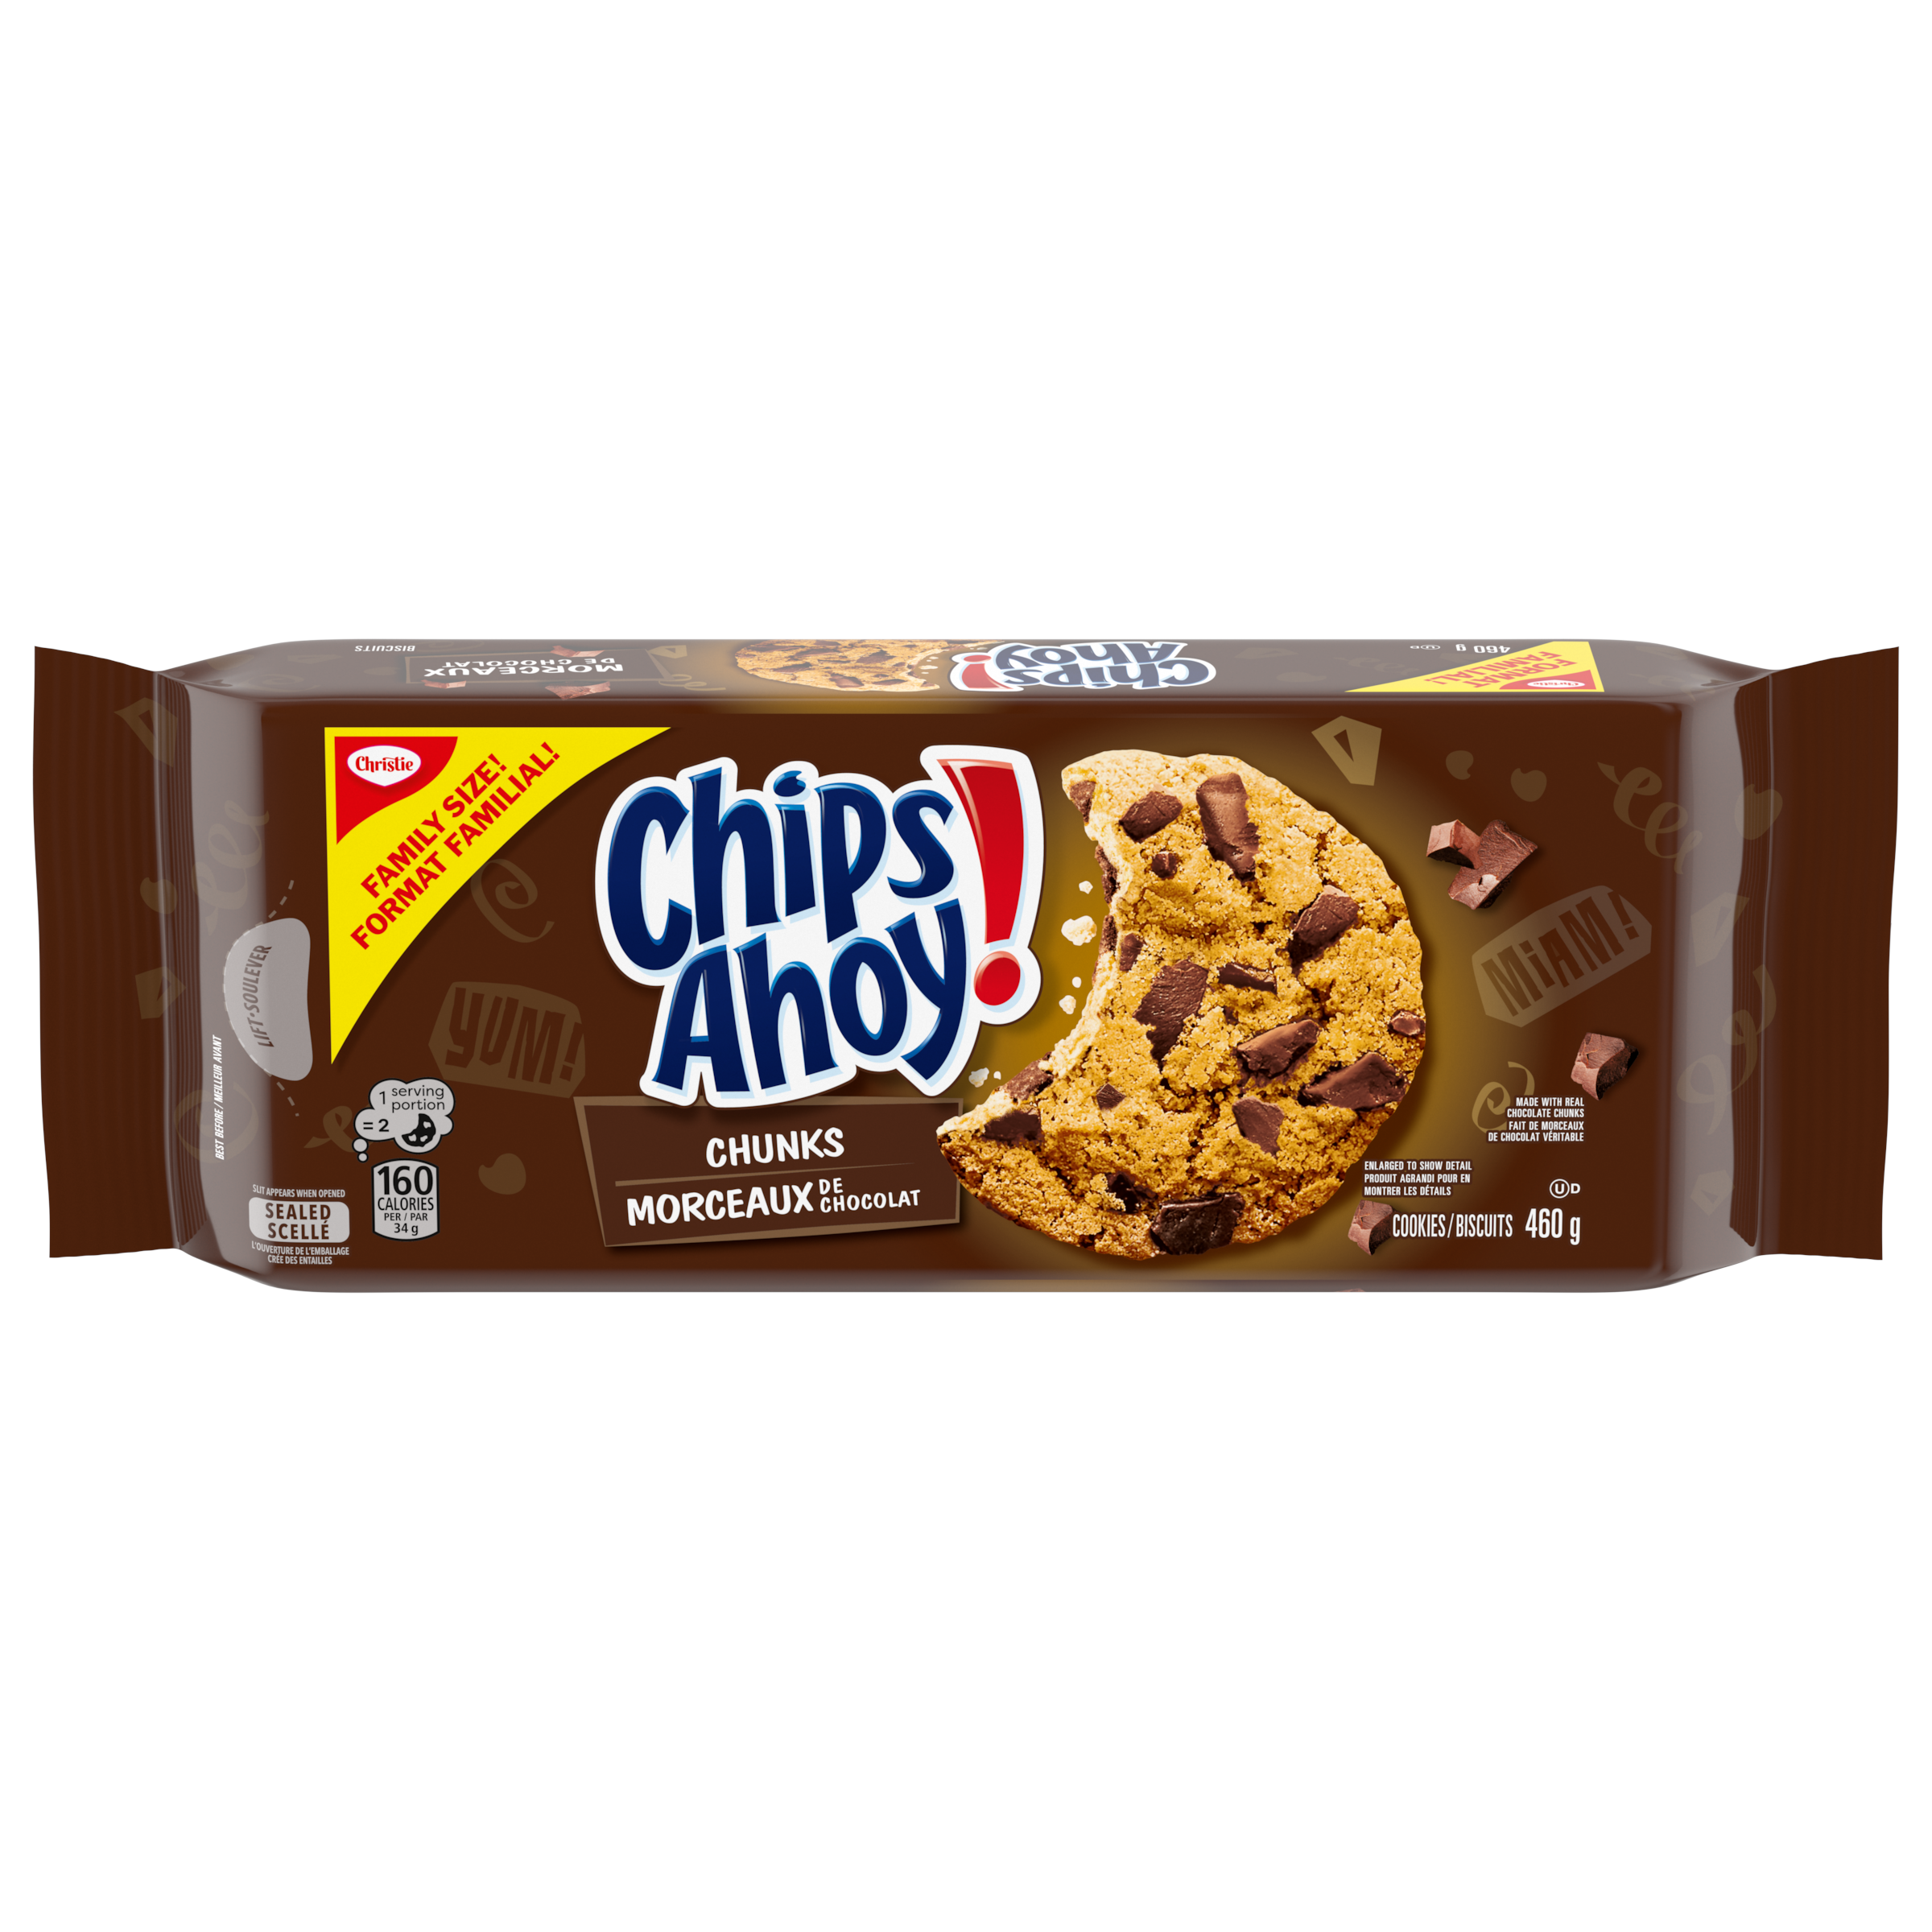 Biscuits CHIPS AHOY! Morceaux de chocolat, 1 emballage refermable, format familial de 460g